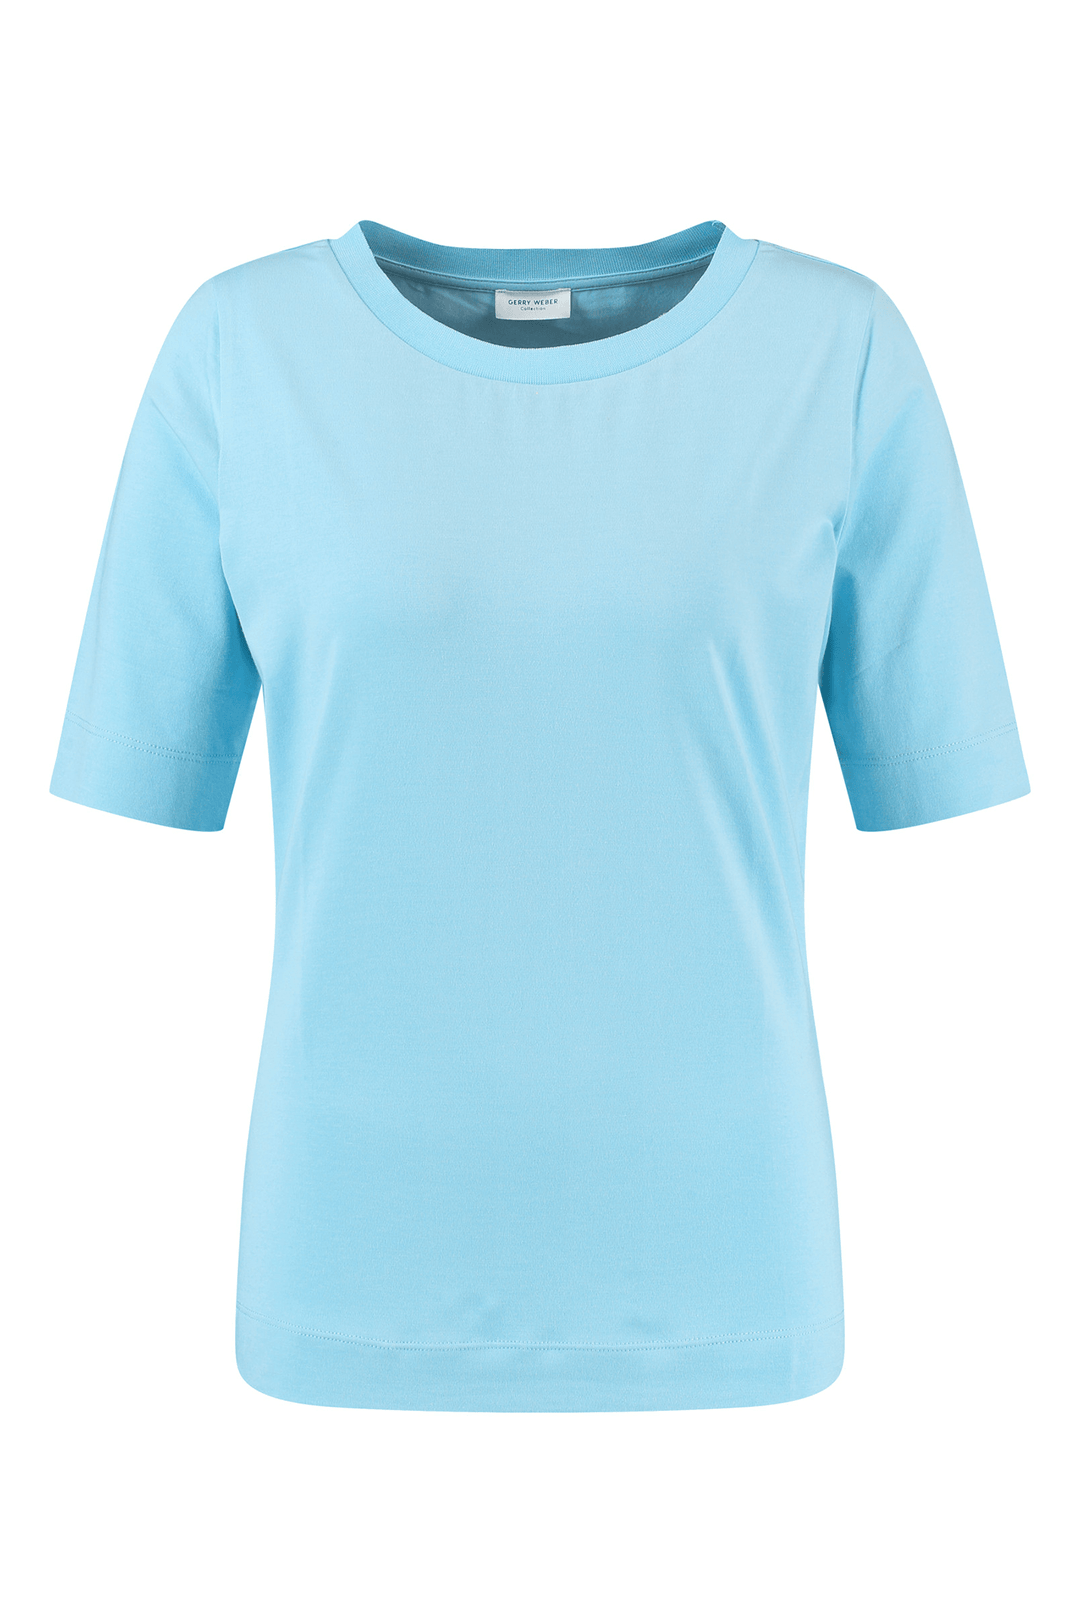 Gerry Weber 770200-35001 80902 Sky Blue T-Shirt - Shirley Allum Boutique